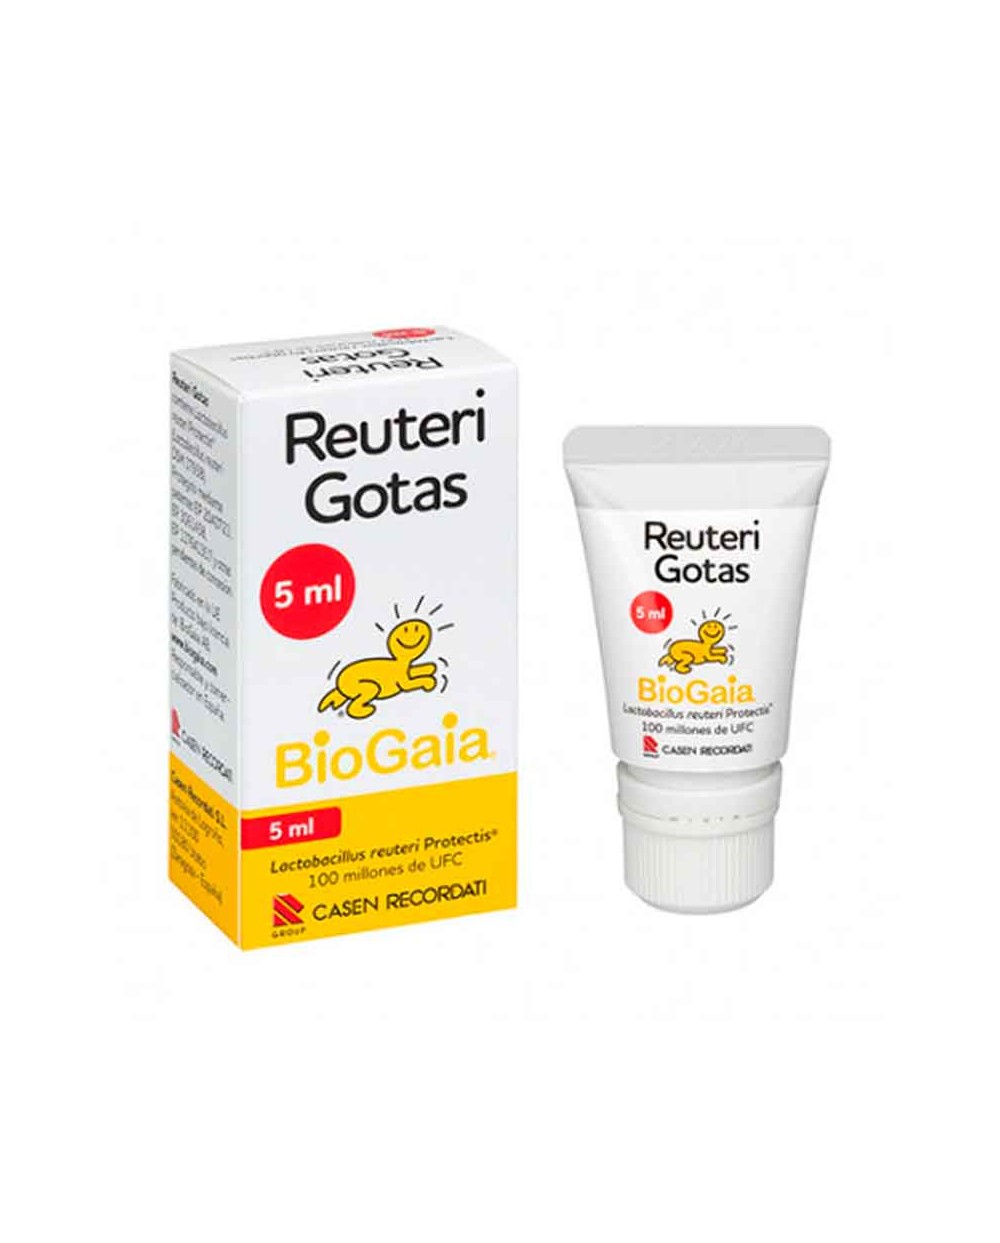 Reuteri Gotas BioGaia reduce cólicos lactantes – 5 ml.